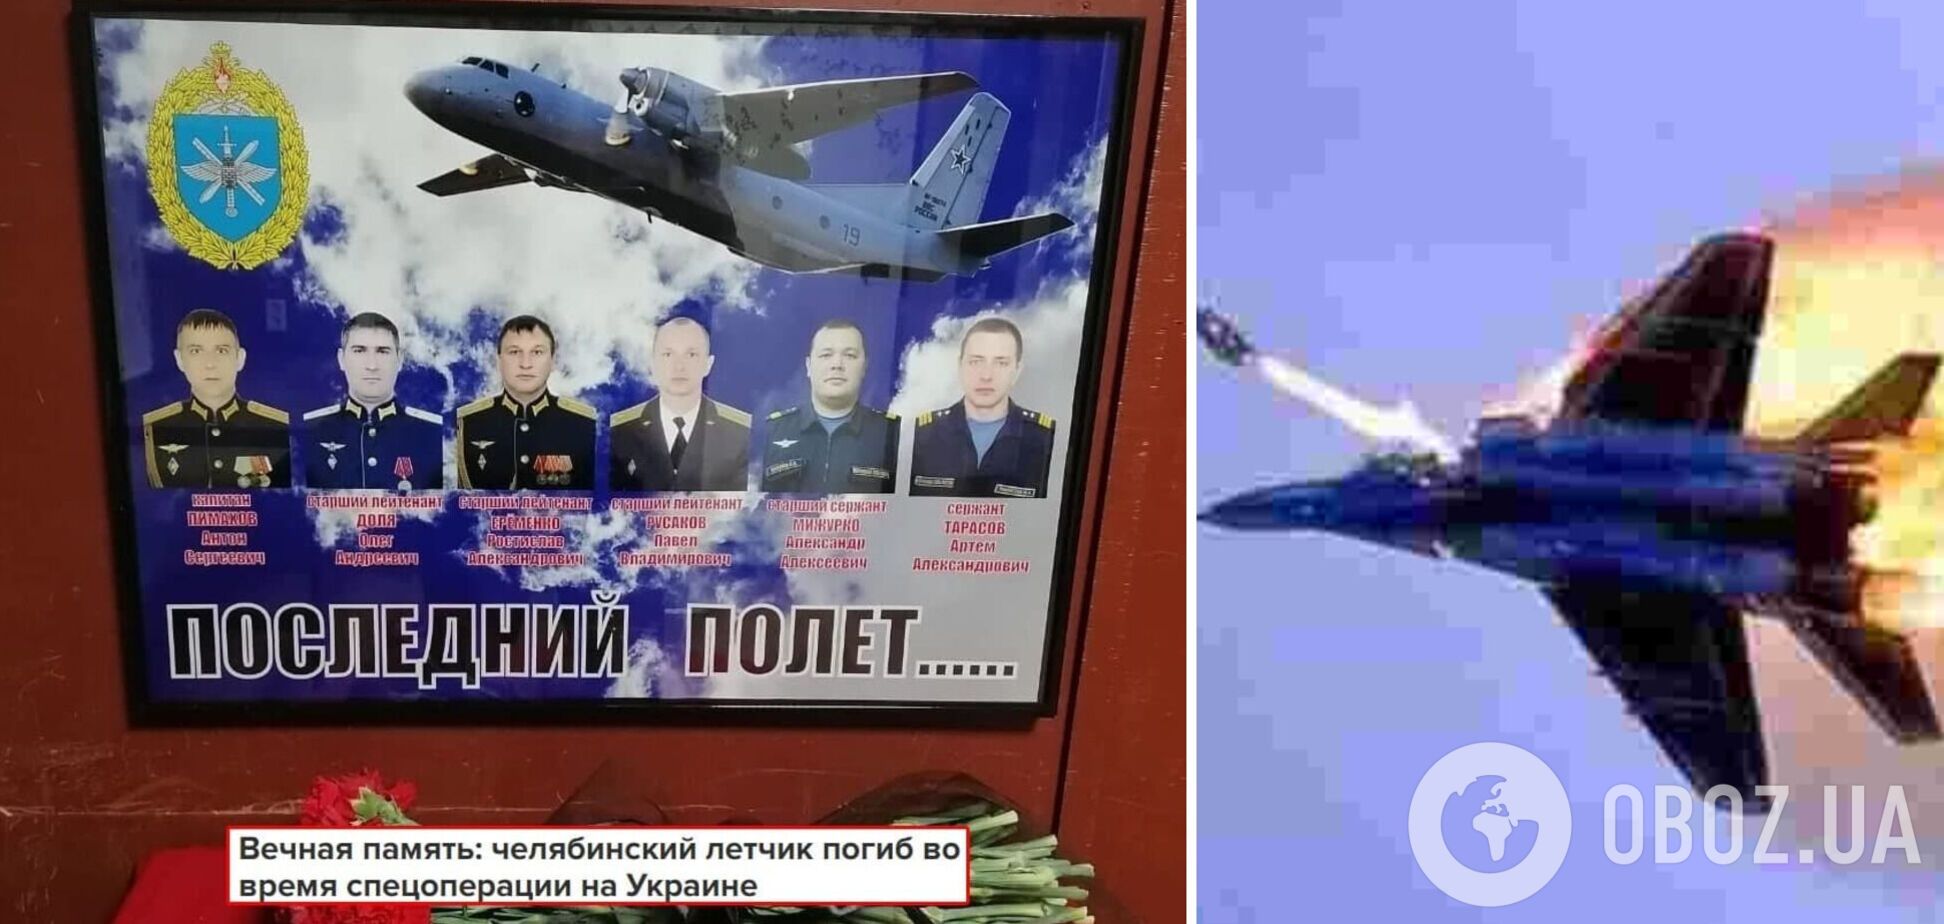 'Птичка не долетела': в РФ подтвердили уничтожение украинской ПВО самолета Ан-26 с экипажем. Фото